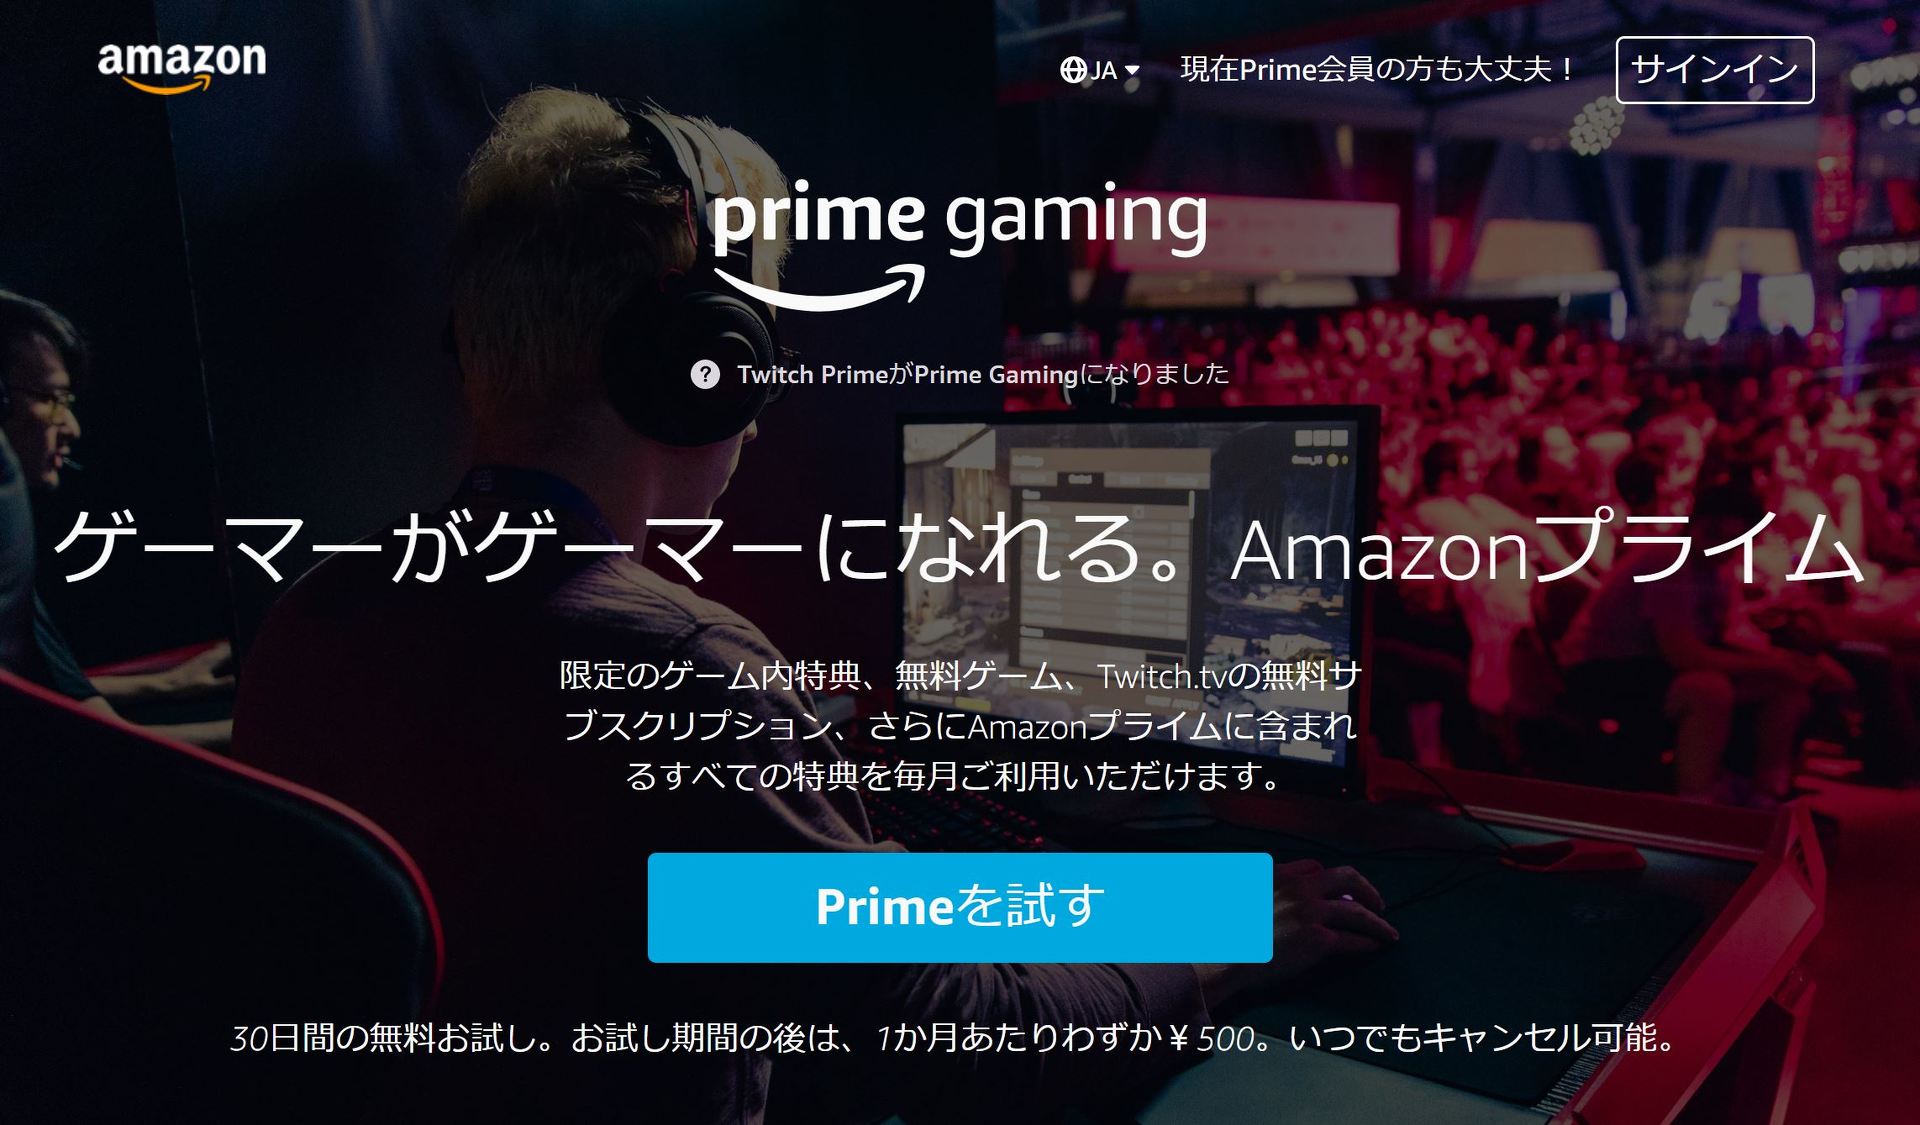 Amazon Twitch Prime を Prime Gaming に改称 Itmedia News